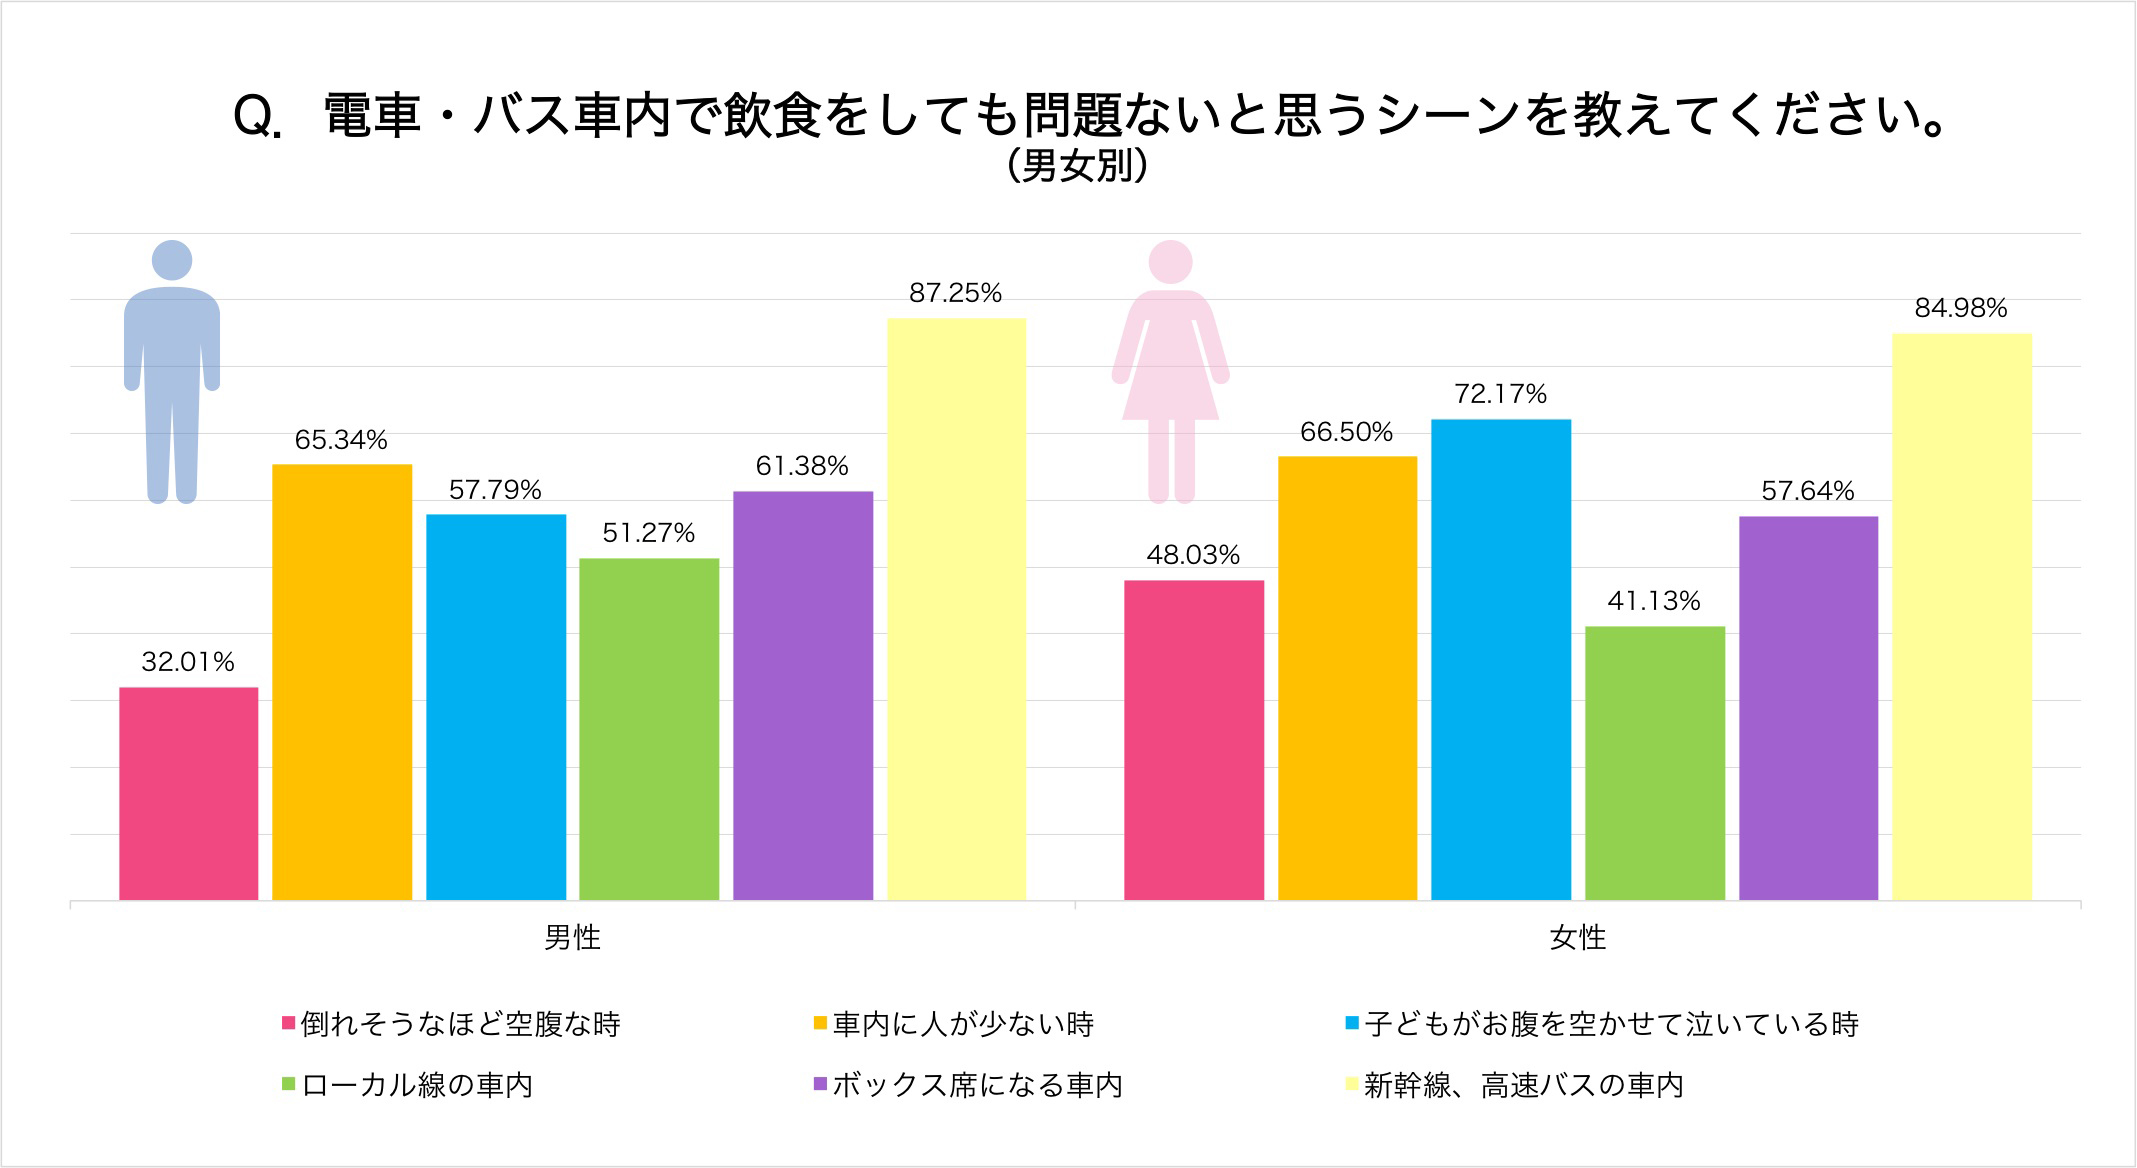 新幹線や長距離列車の車内については、飲食OKと考える人が8割超。「子どもが泣いている時」については女性が男性より寛容であることがわかります